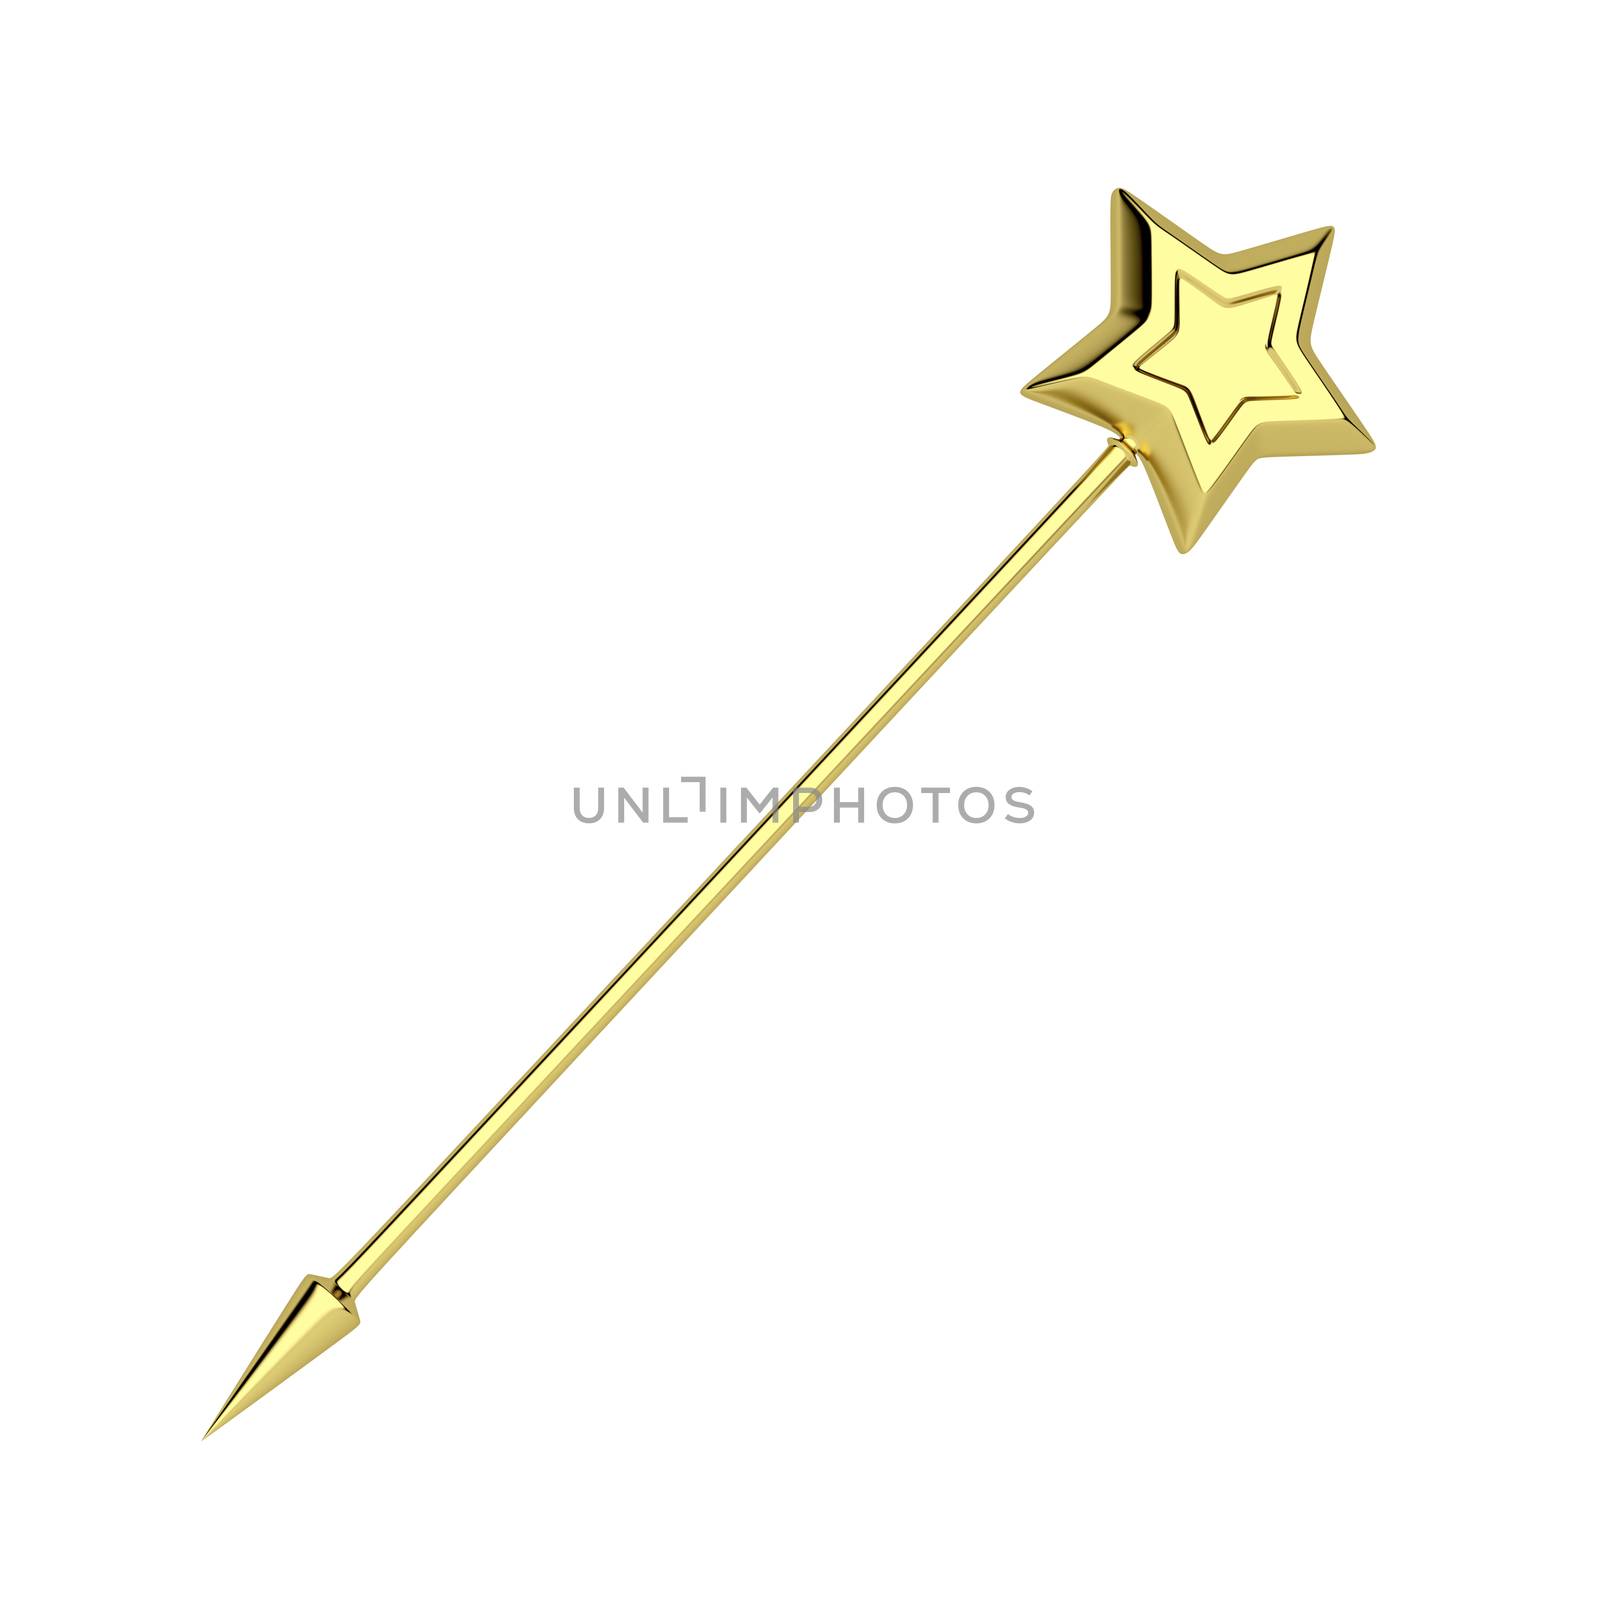 Golden magic wand isolated on white background